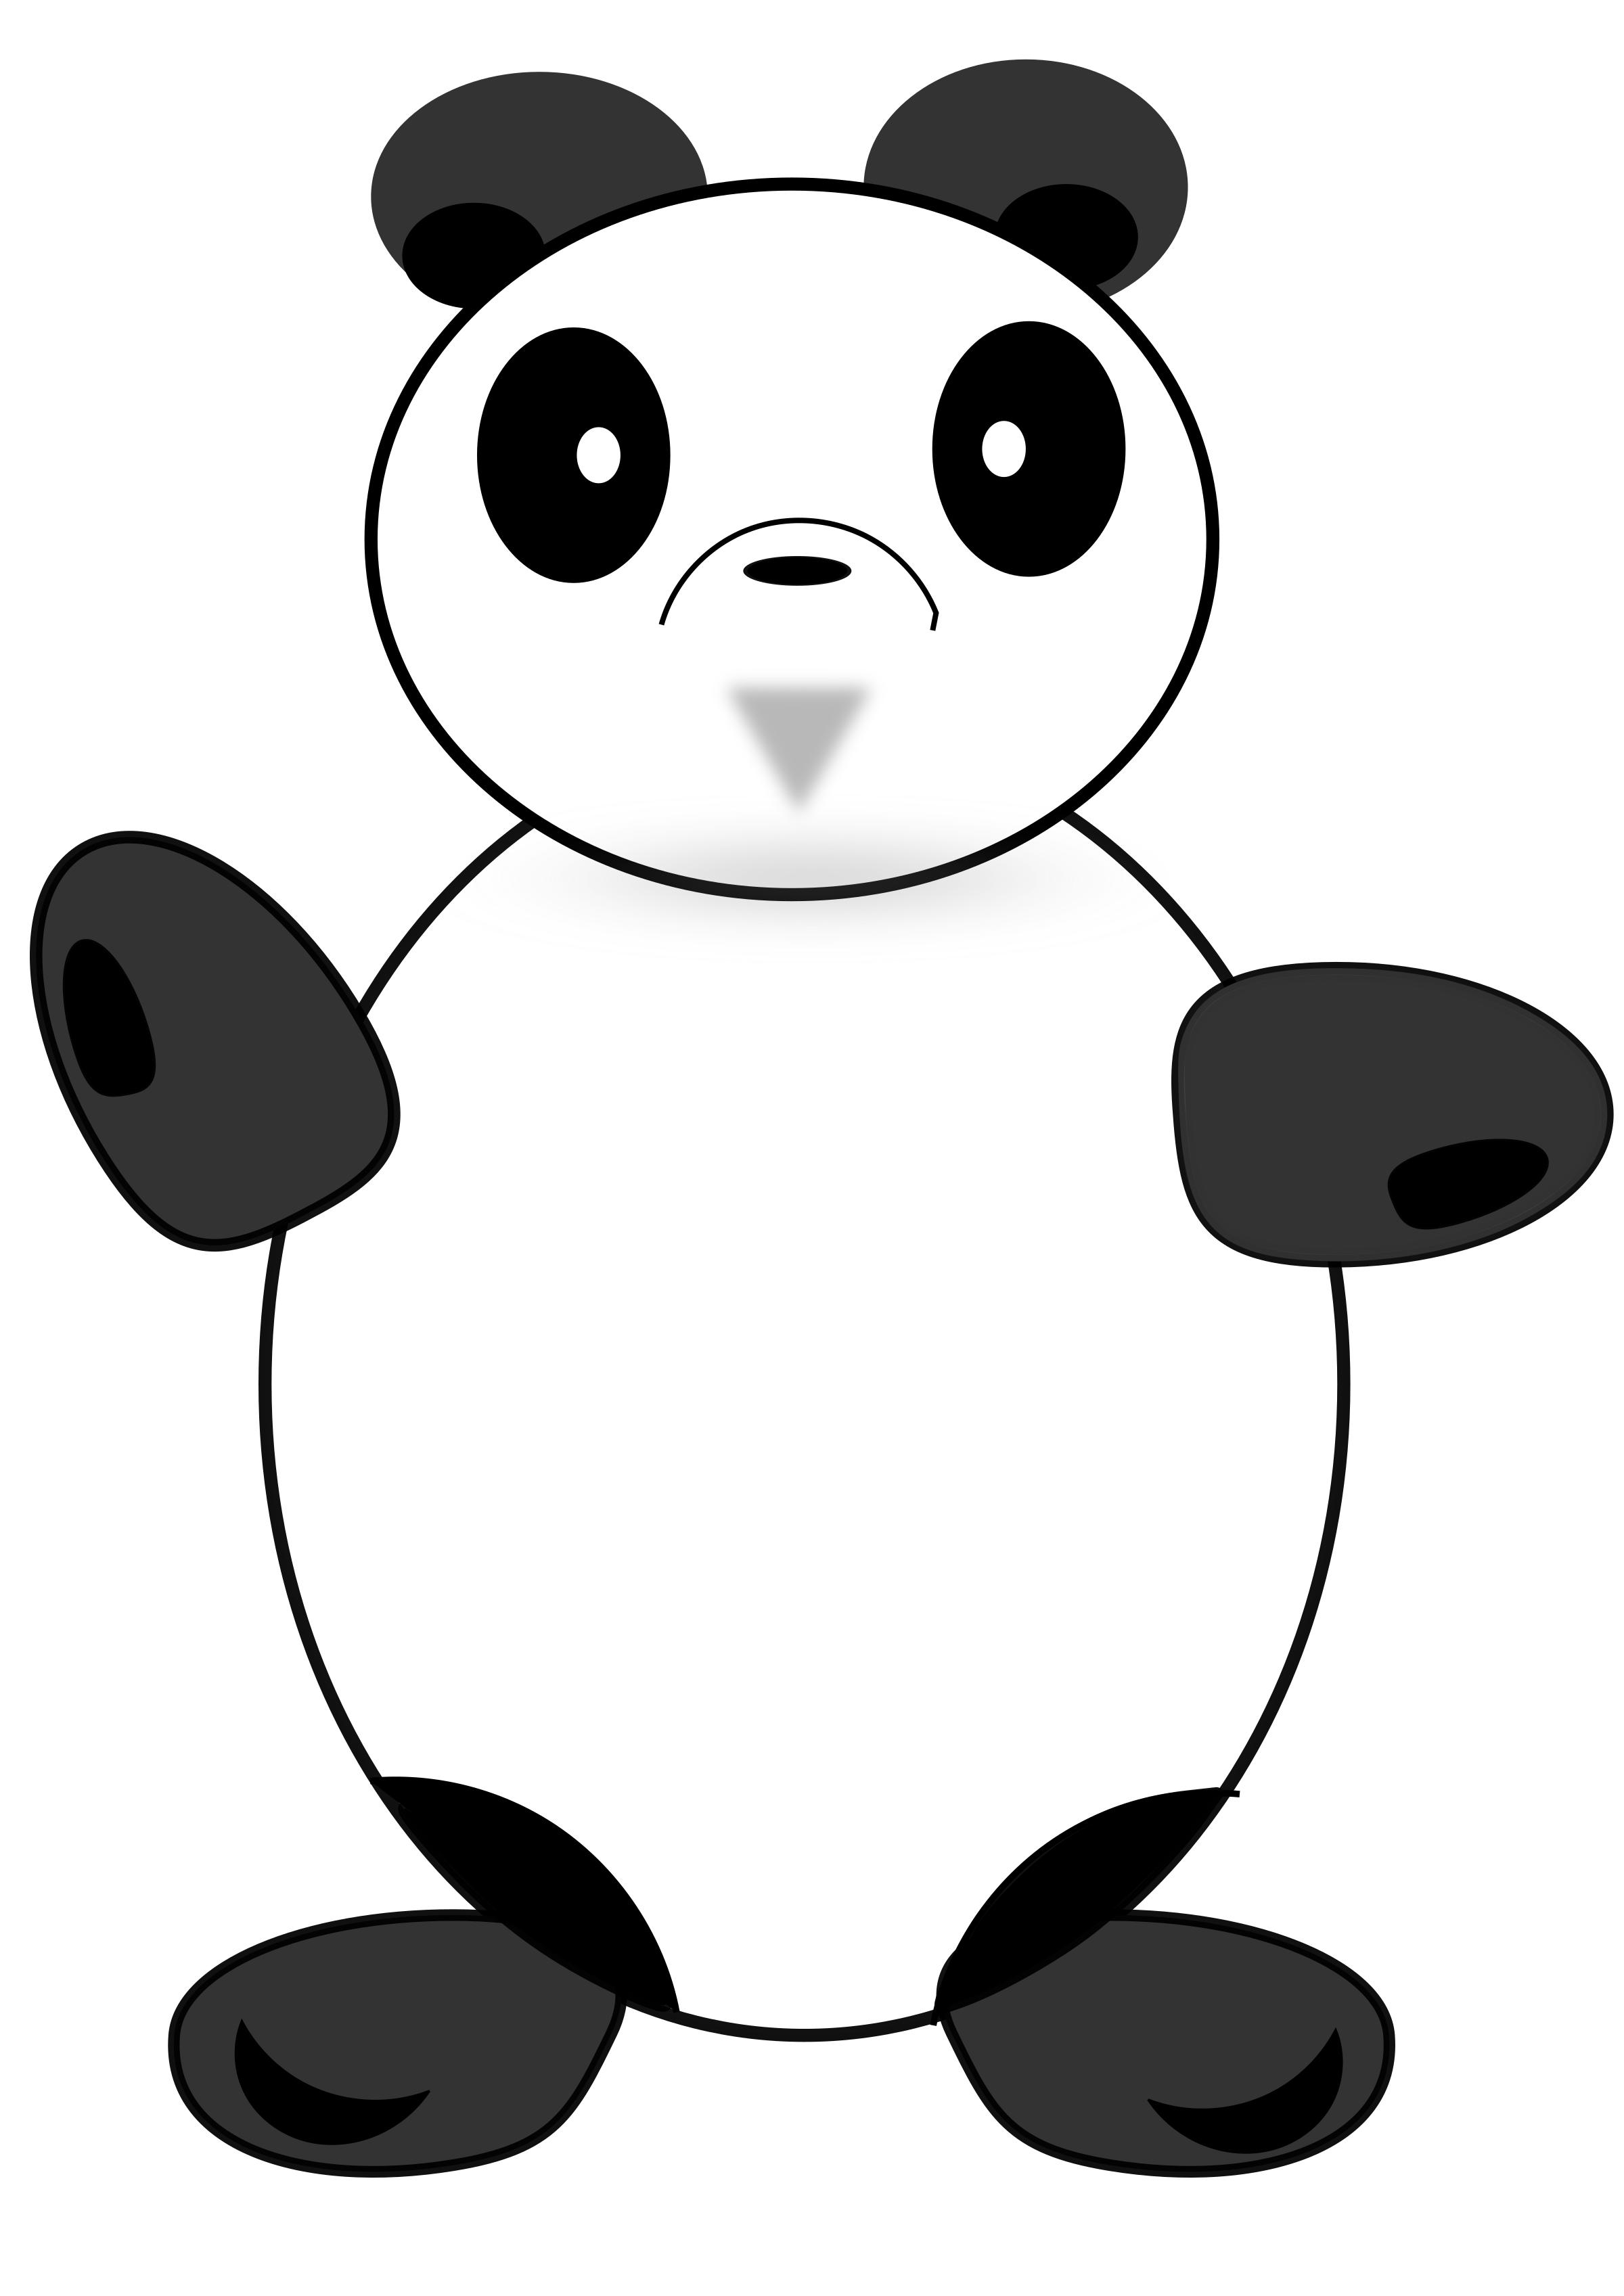 The Circle Panda PNG icons